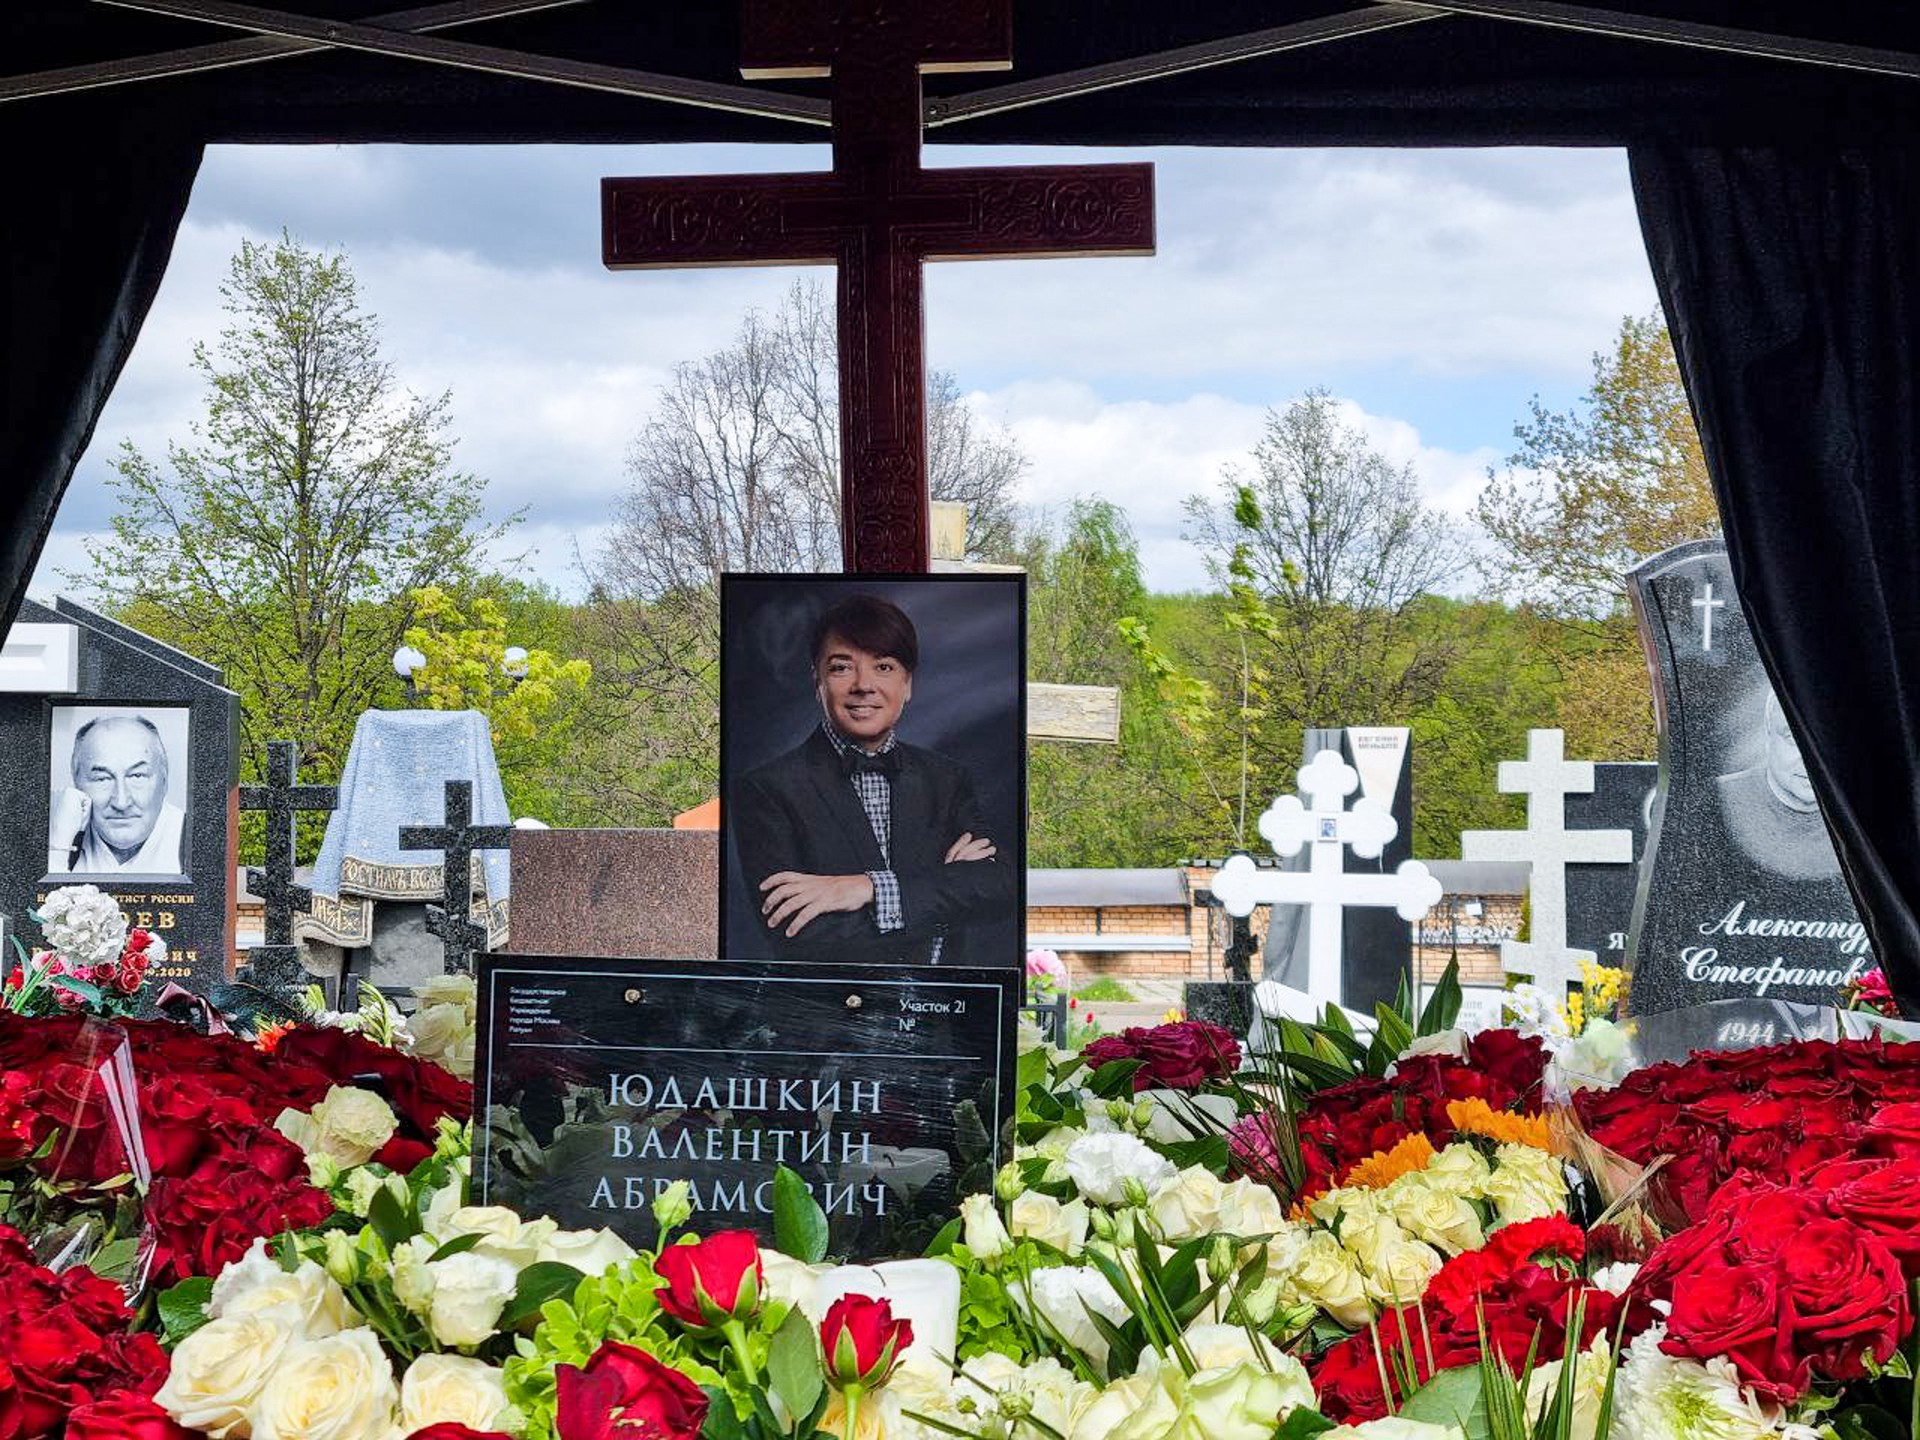 Модельера Валентина Юдашкина похоронили в Москве